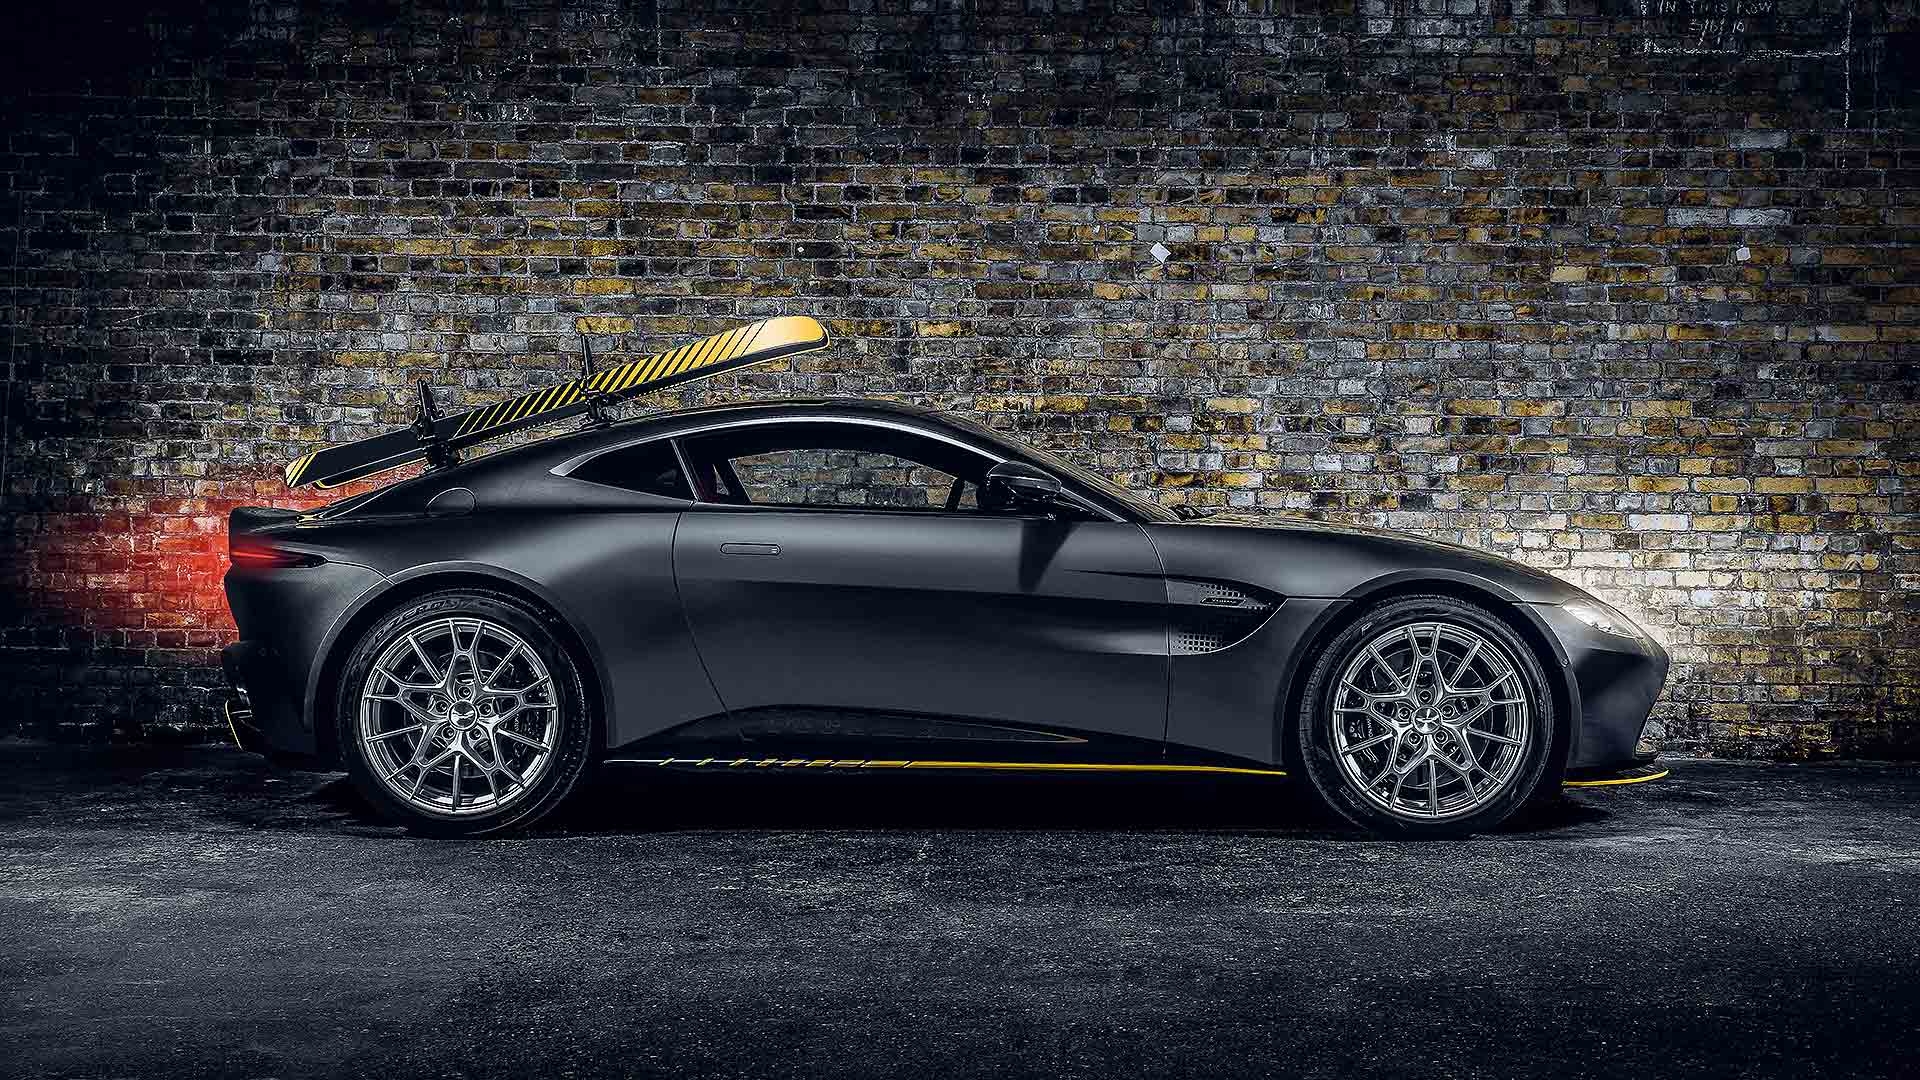 Aston Martin Vantage 007 Edition